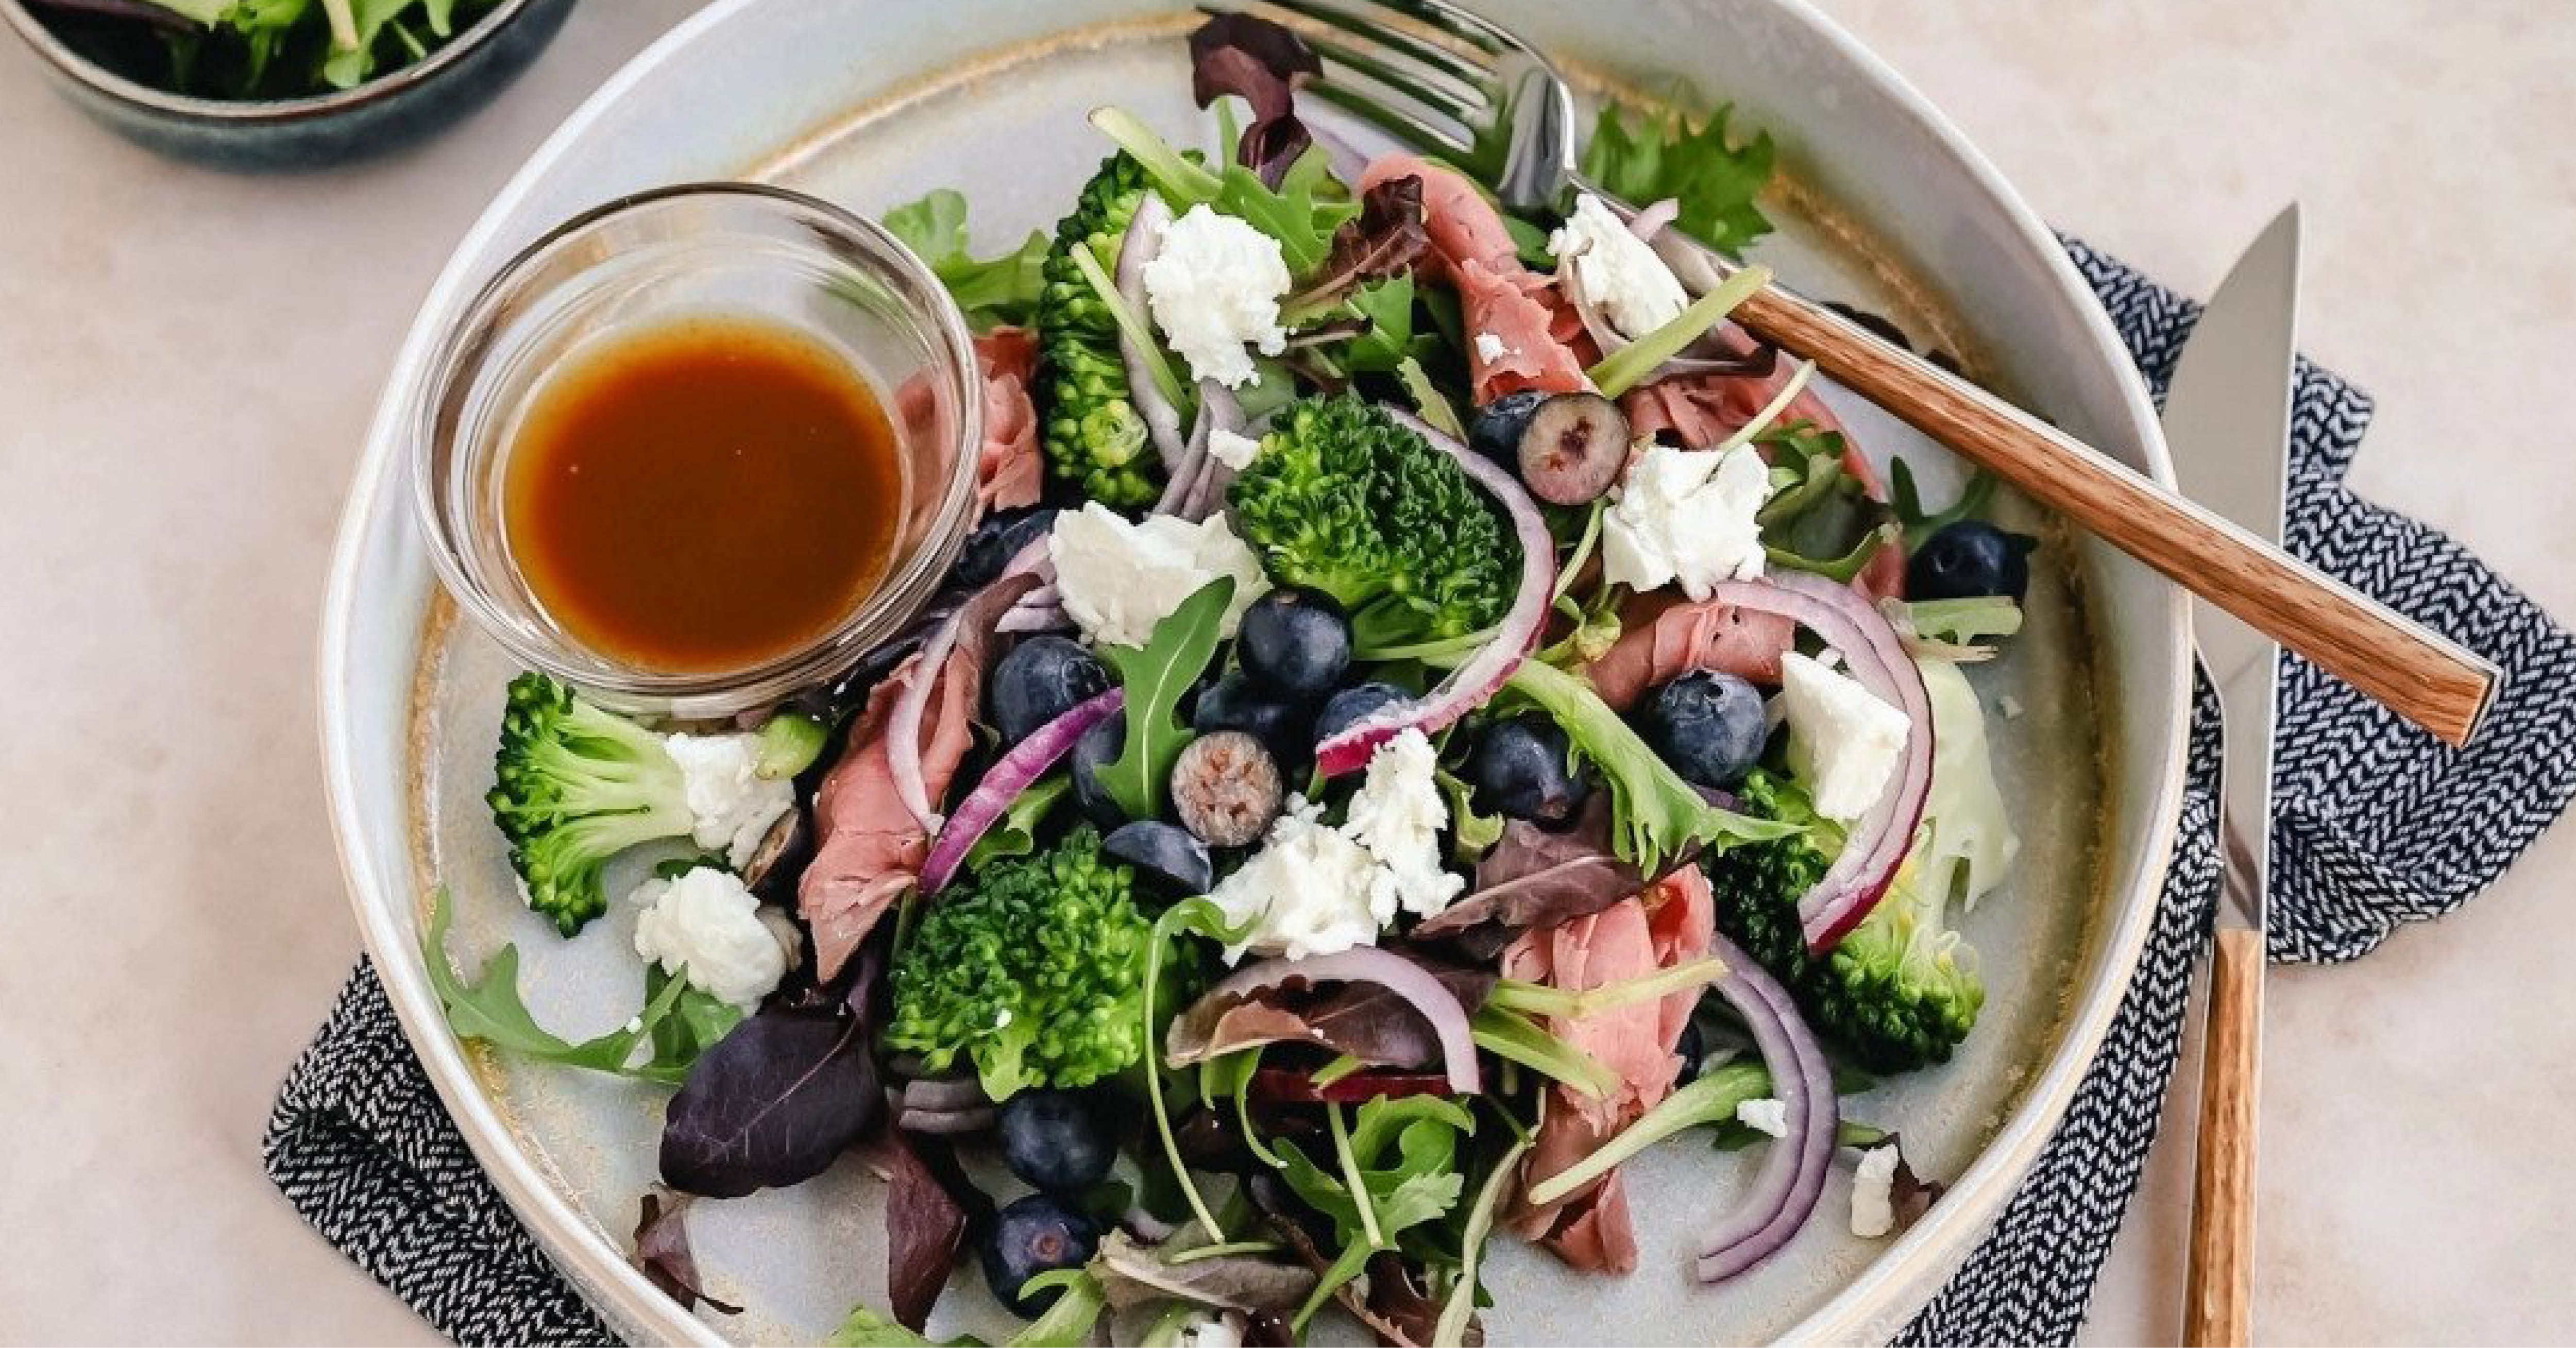 Salade met broccoli, blauwe bessen & rosbief (404 kcal)